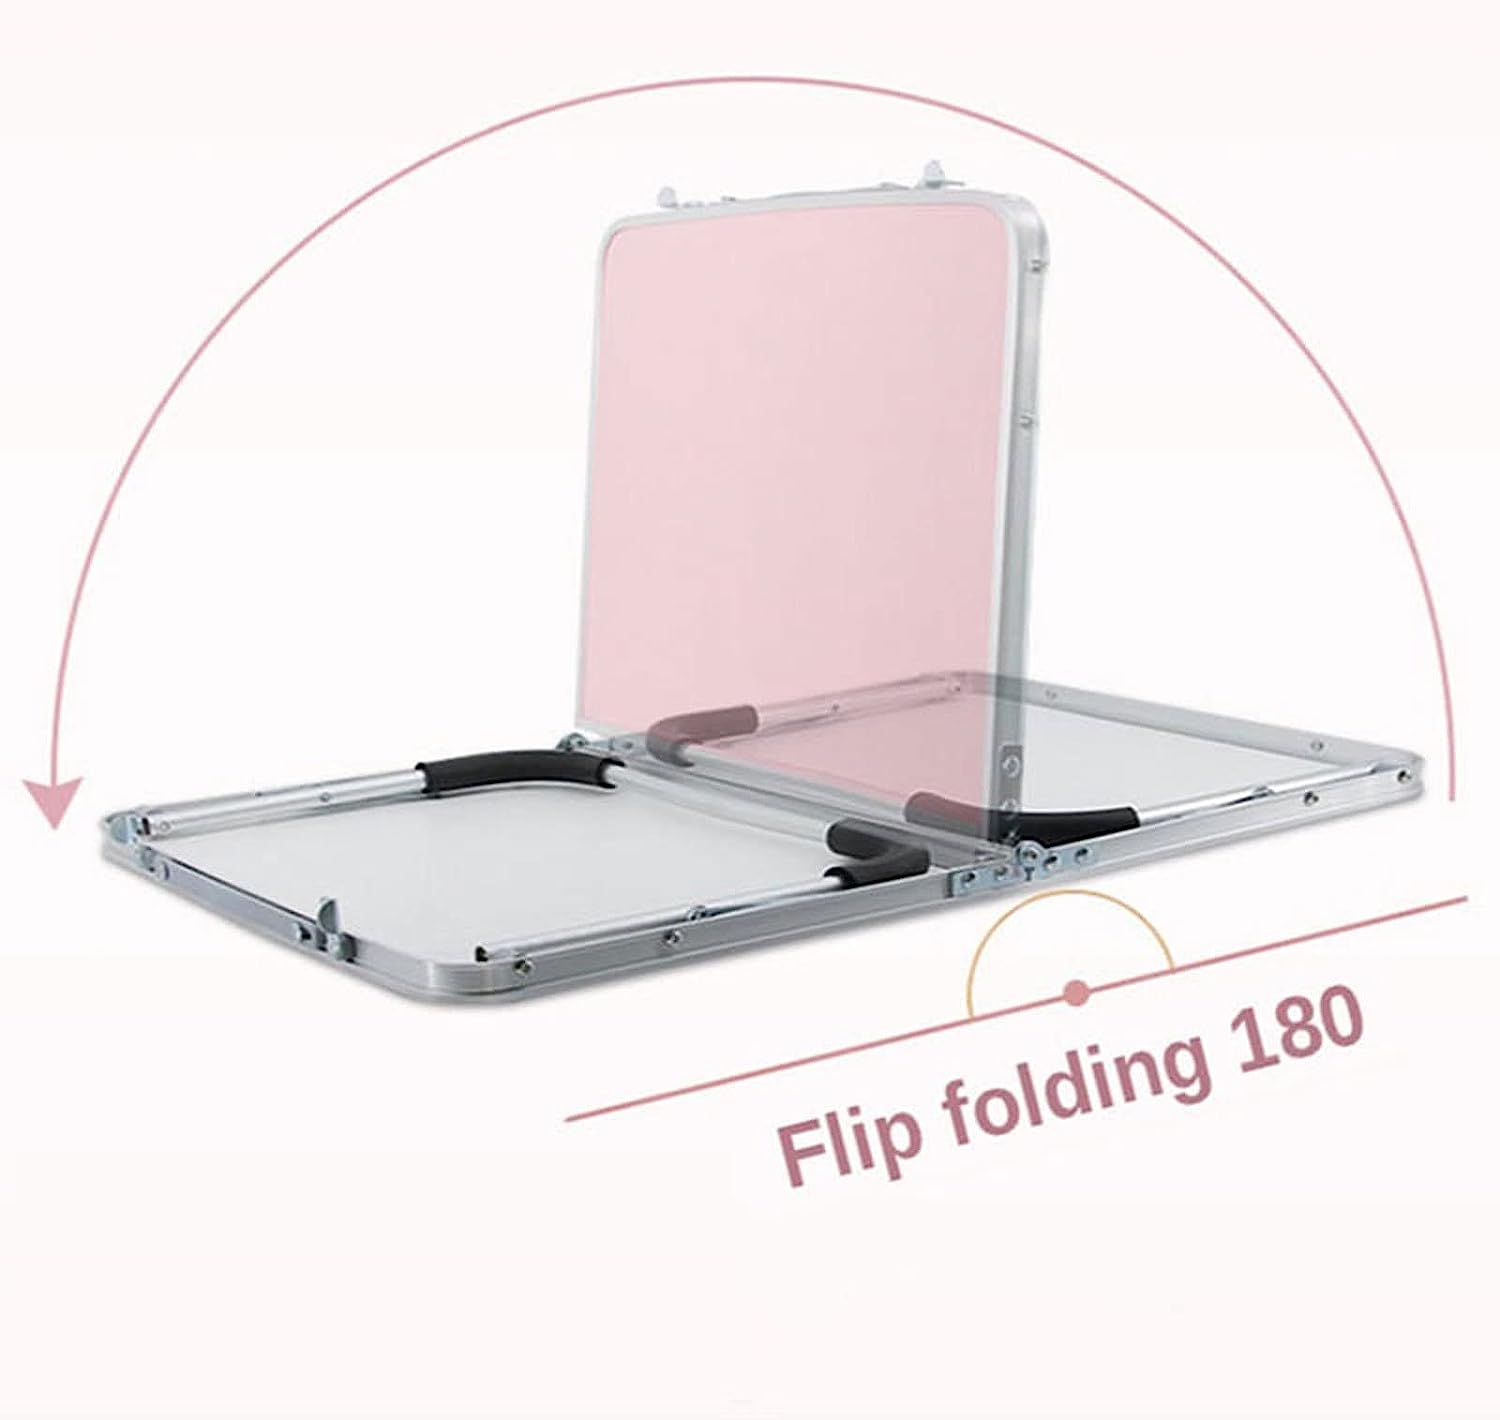 The portable folding mini table flips, folding 180 degrees